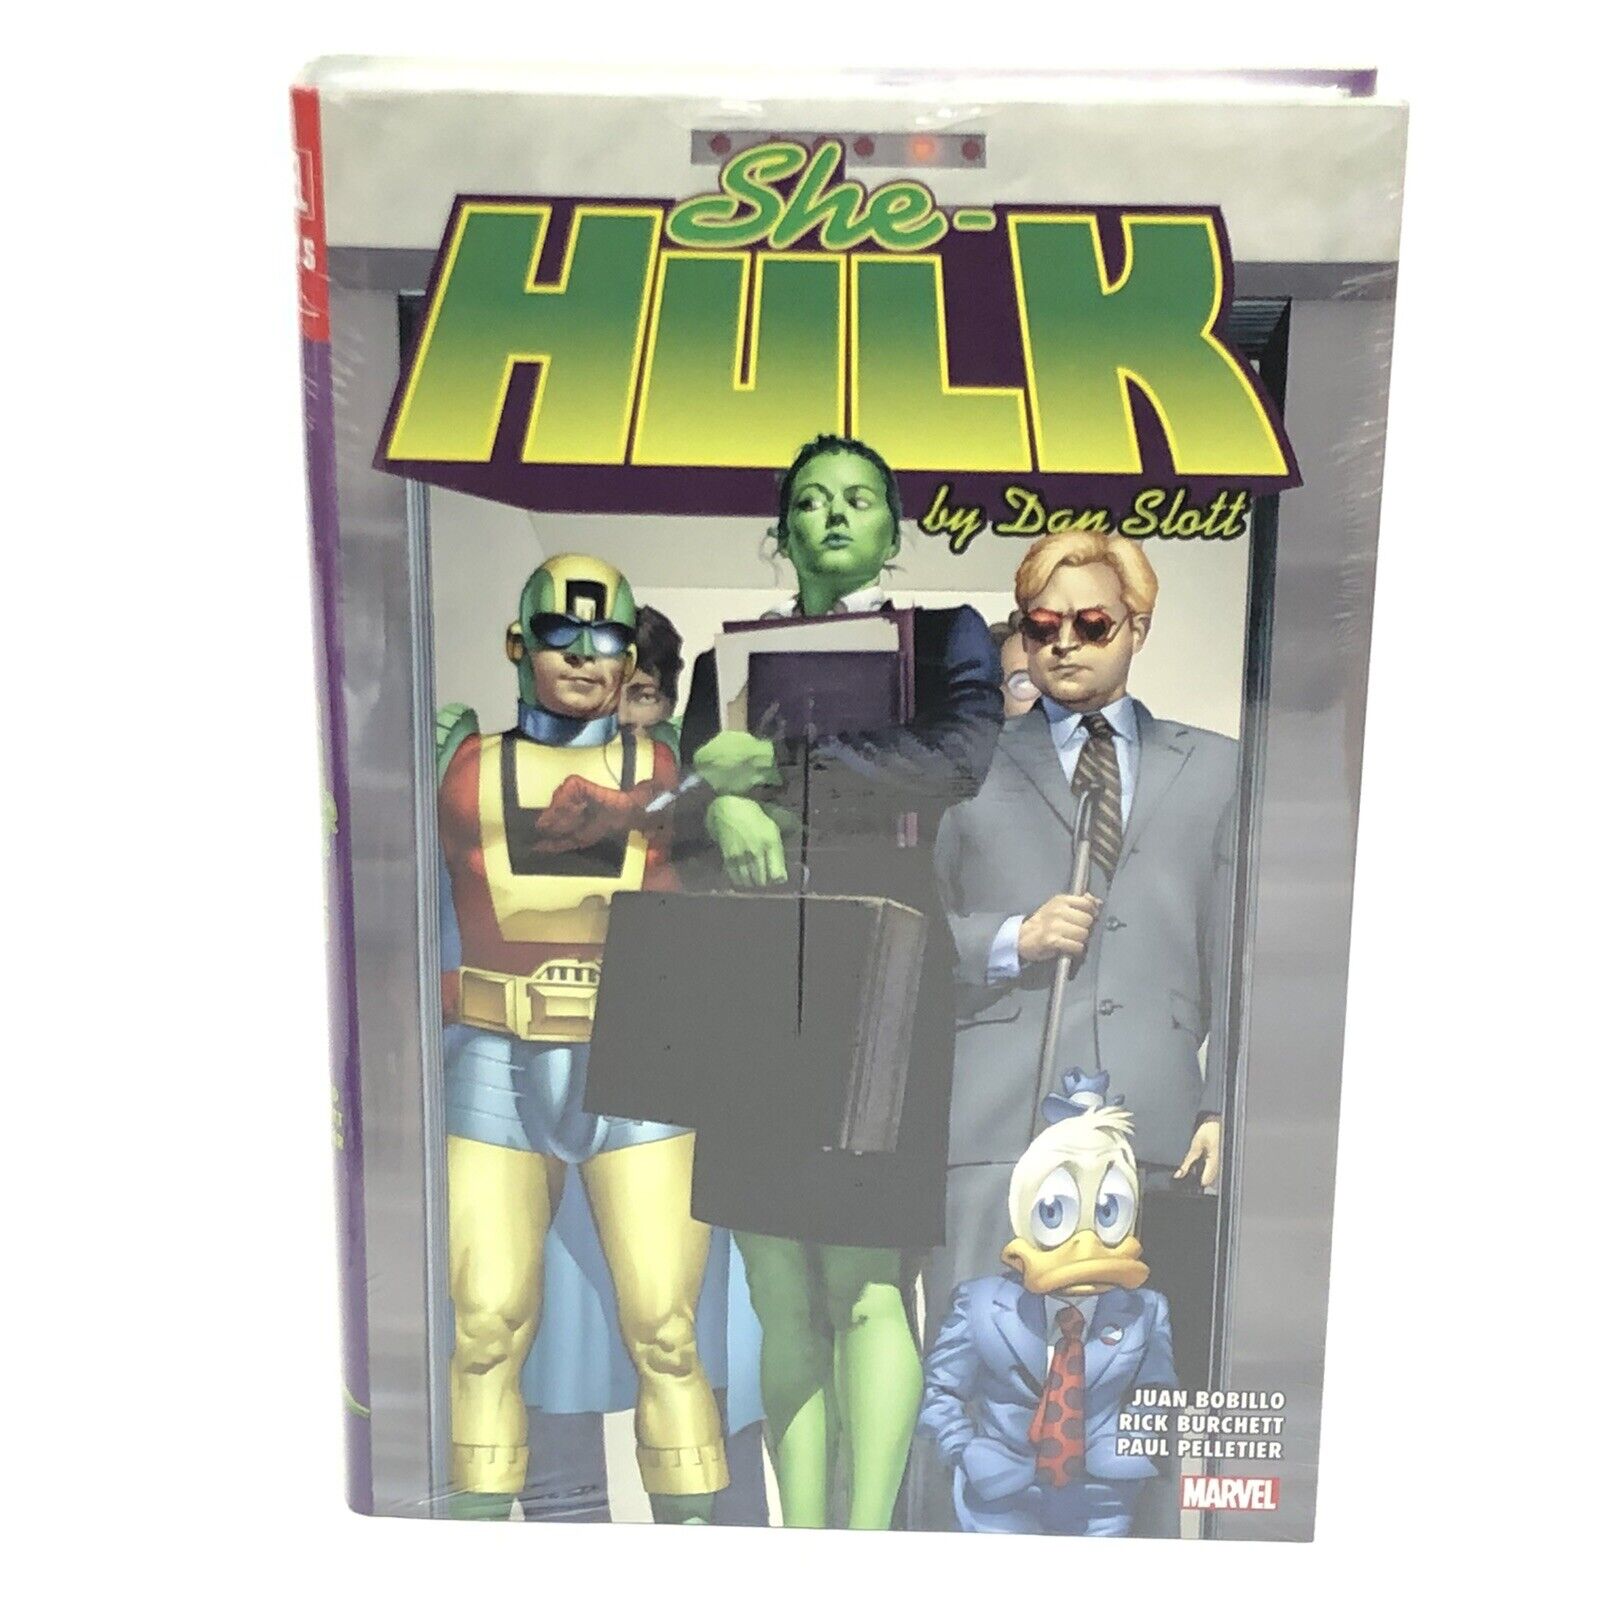 She-Hulk by Dan Slott Omnibus New Printing DM Cover New Marvel Comics HC Sealed